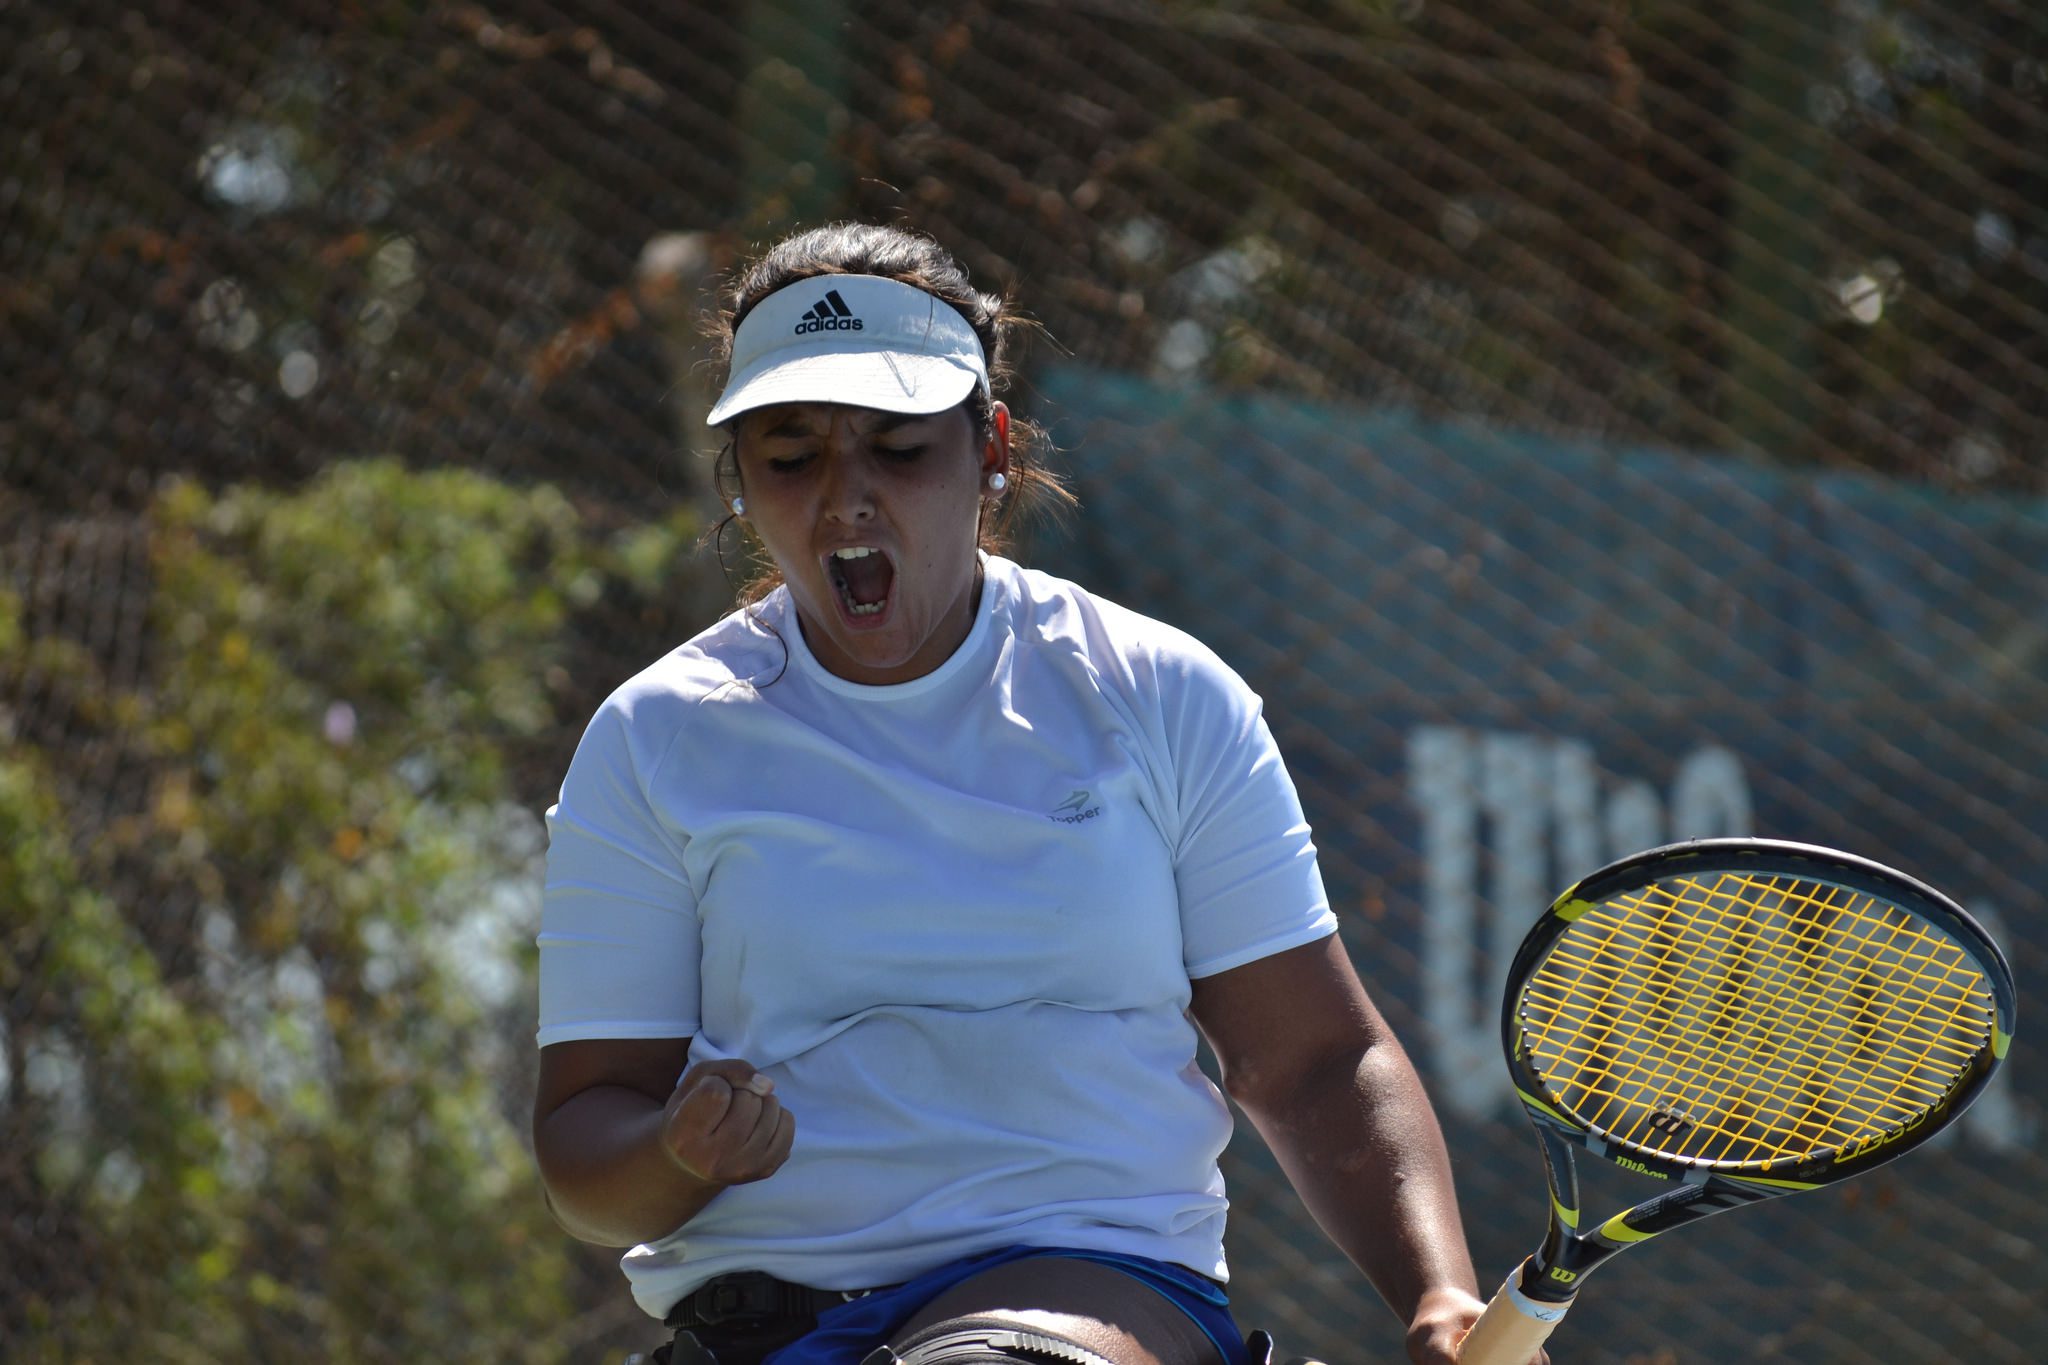 Tenis adaptado | Florencia Moreno: “Voy por el título en Cañuelas”